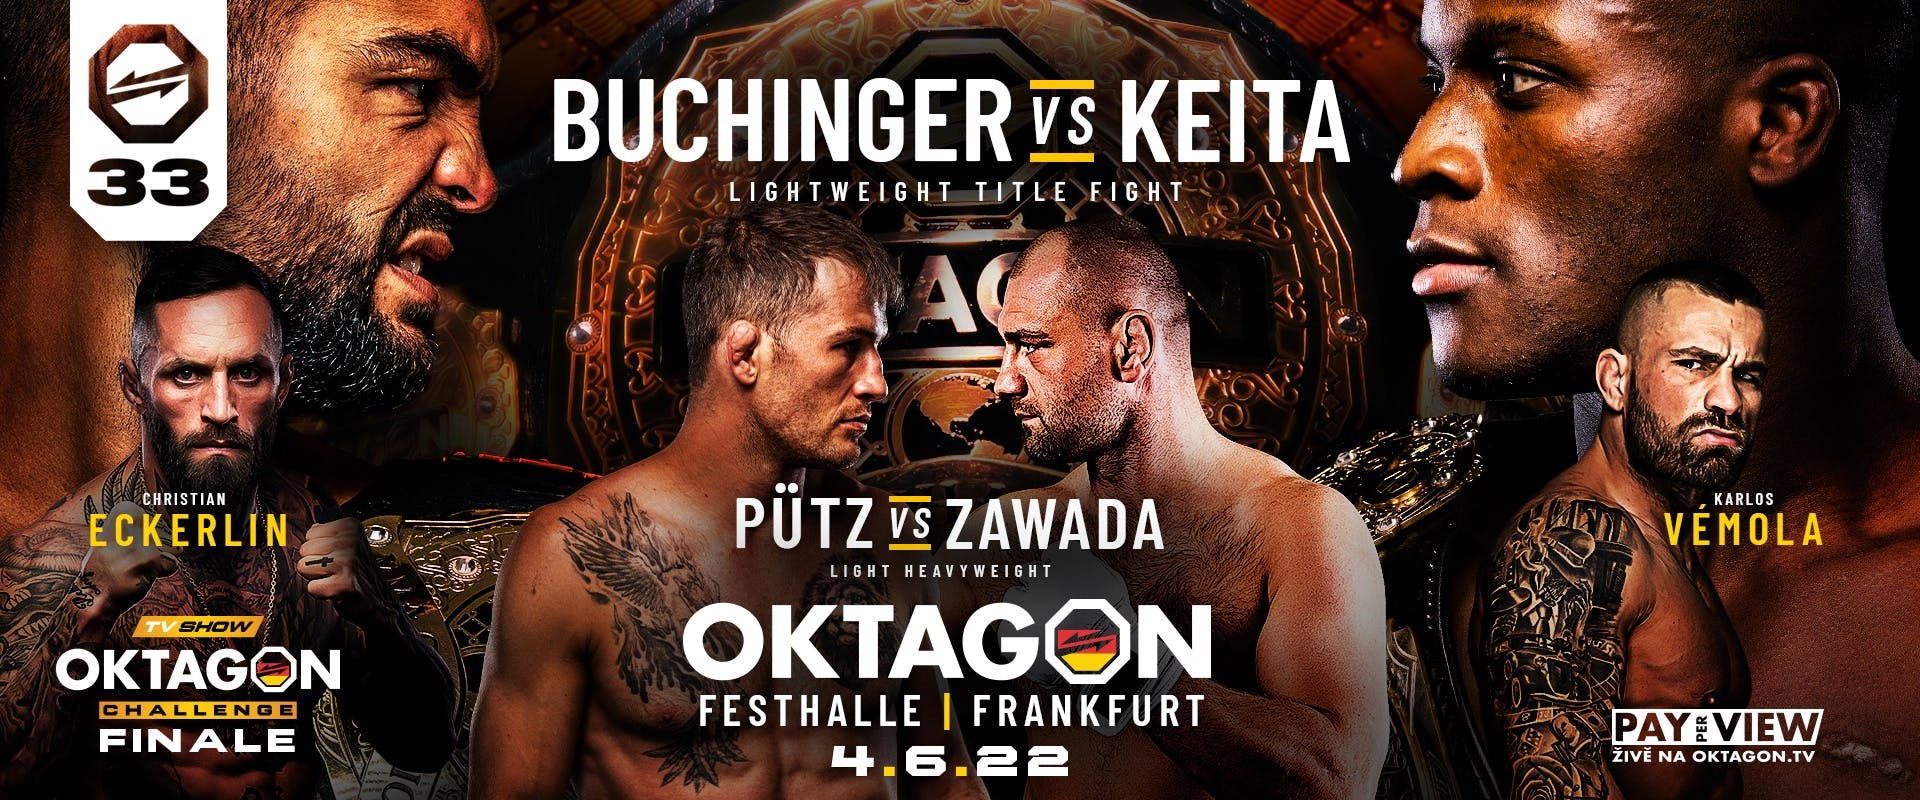 OKTAGON 33: Buchinger vs. Keita 